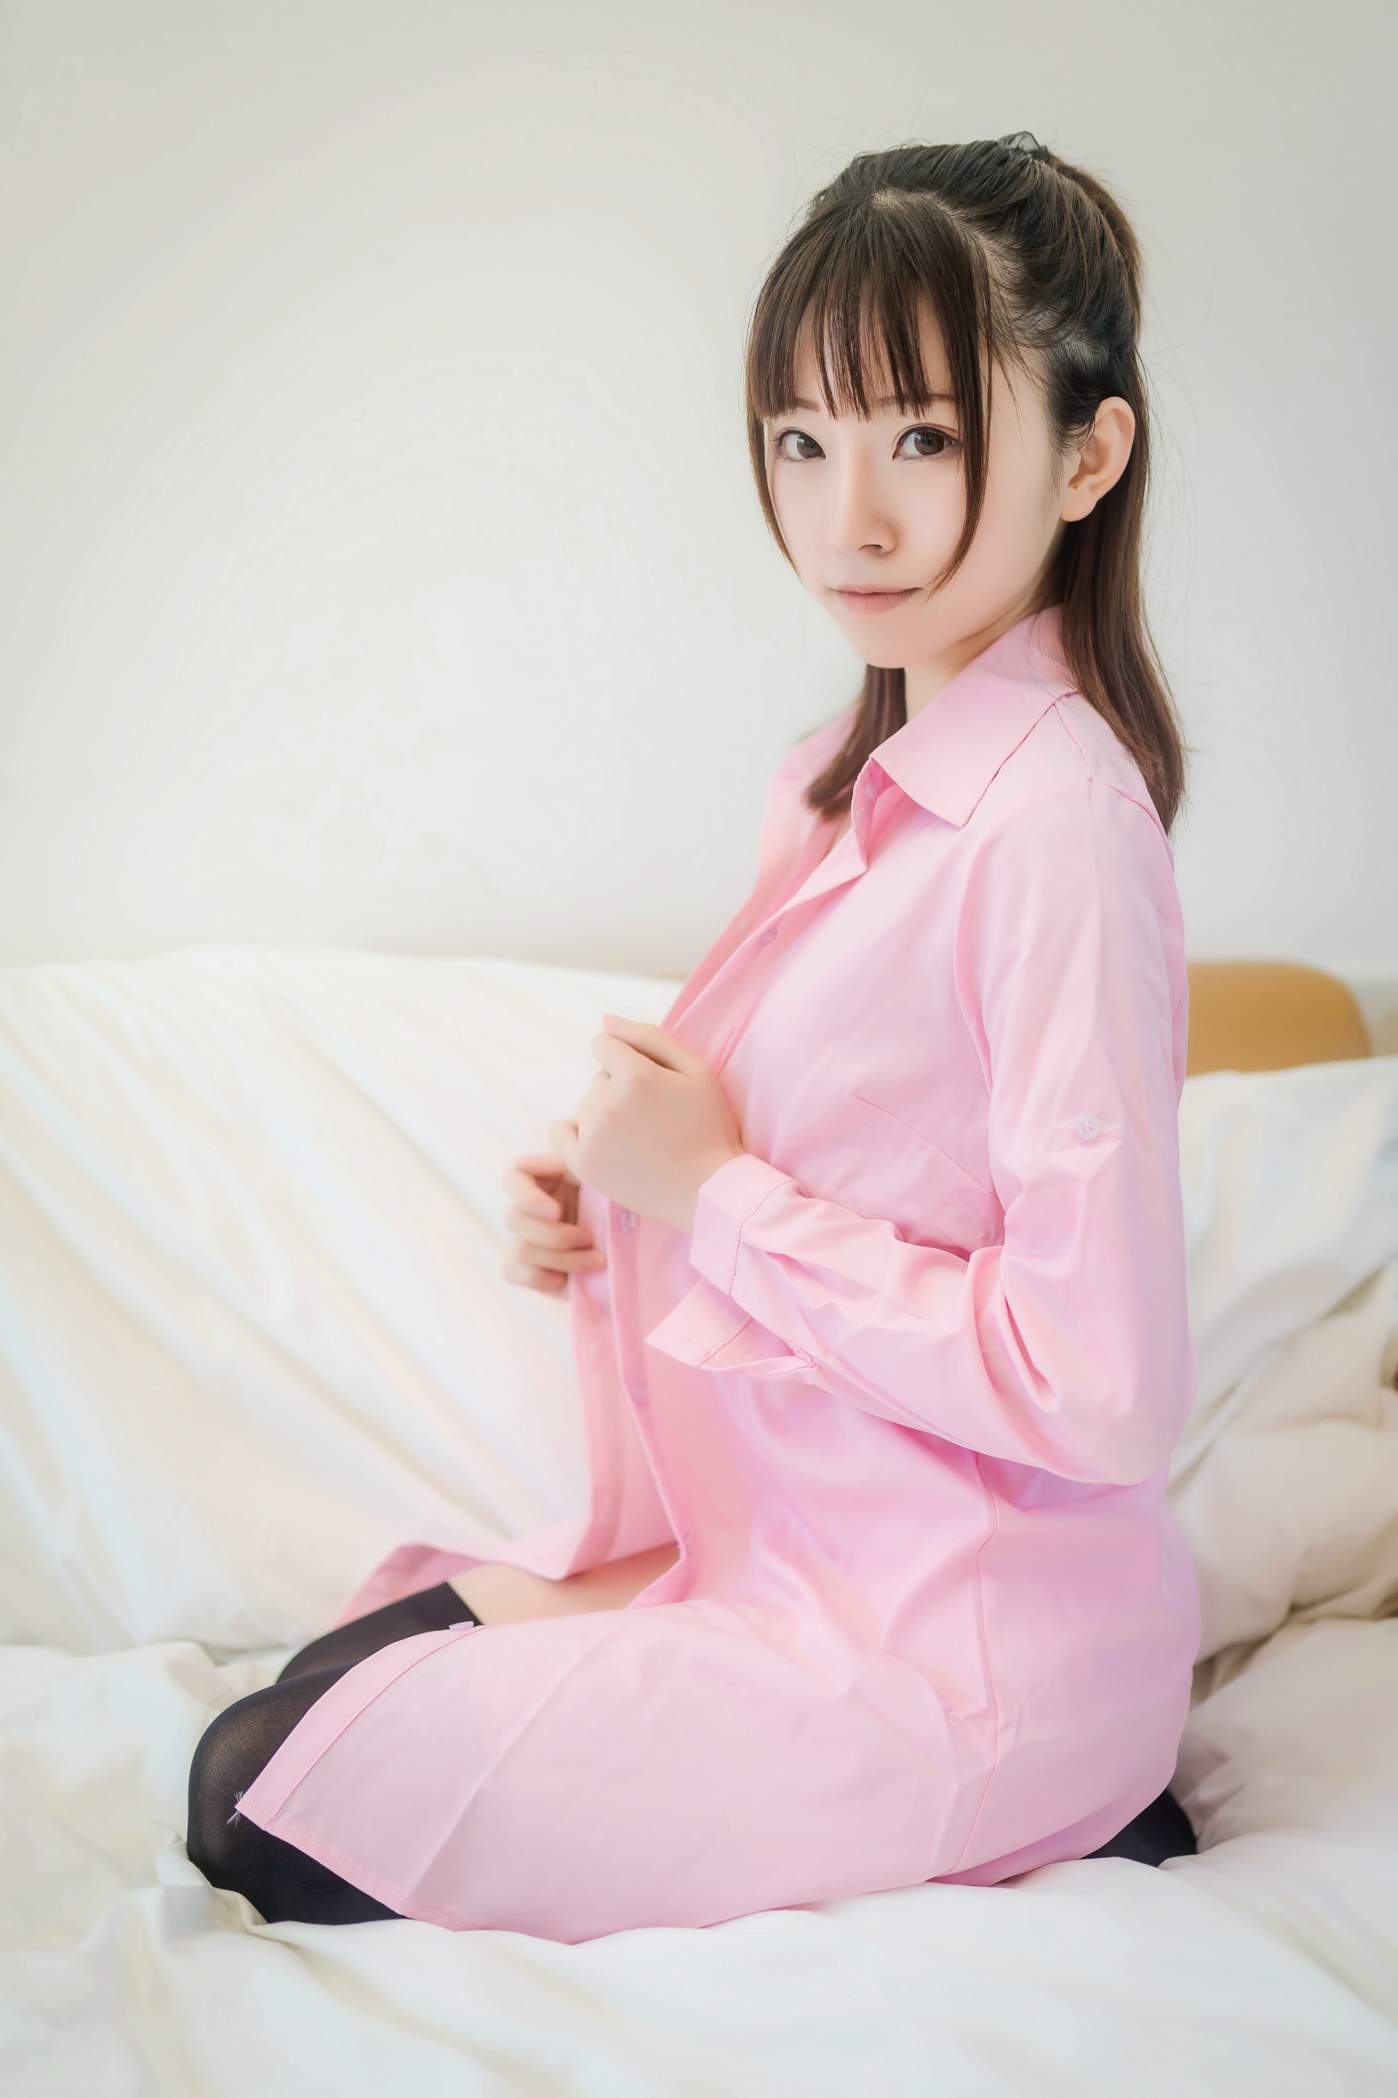 绮太郎 Kitaro   粉色衬衫 [38P 120.9M] - 图屋屋